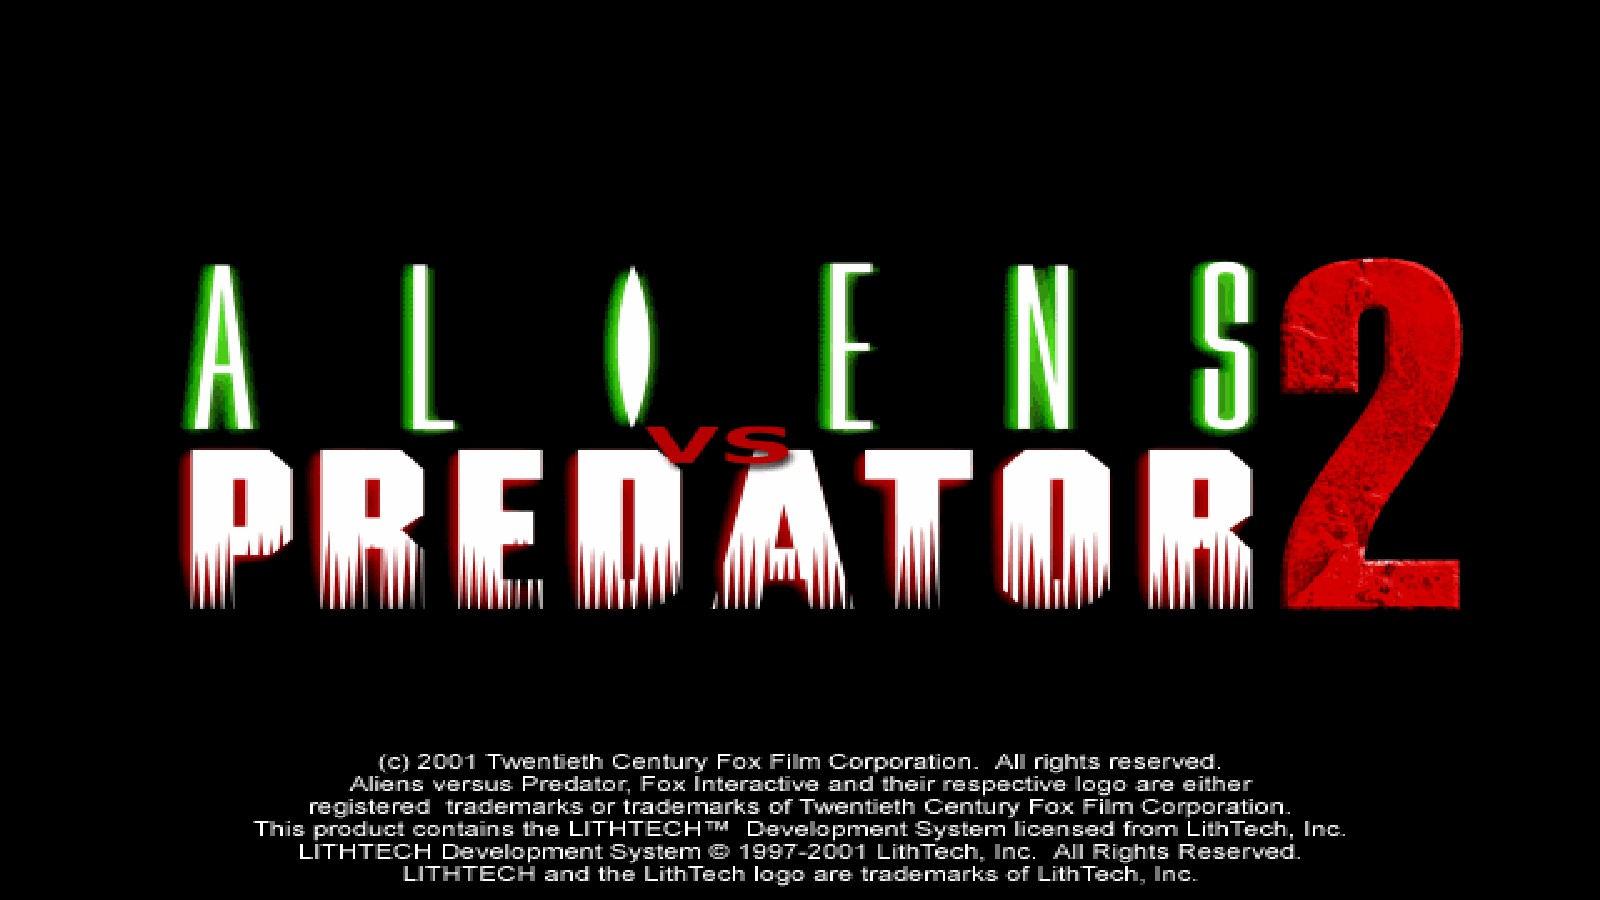 download avp alien vs predator 2